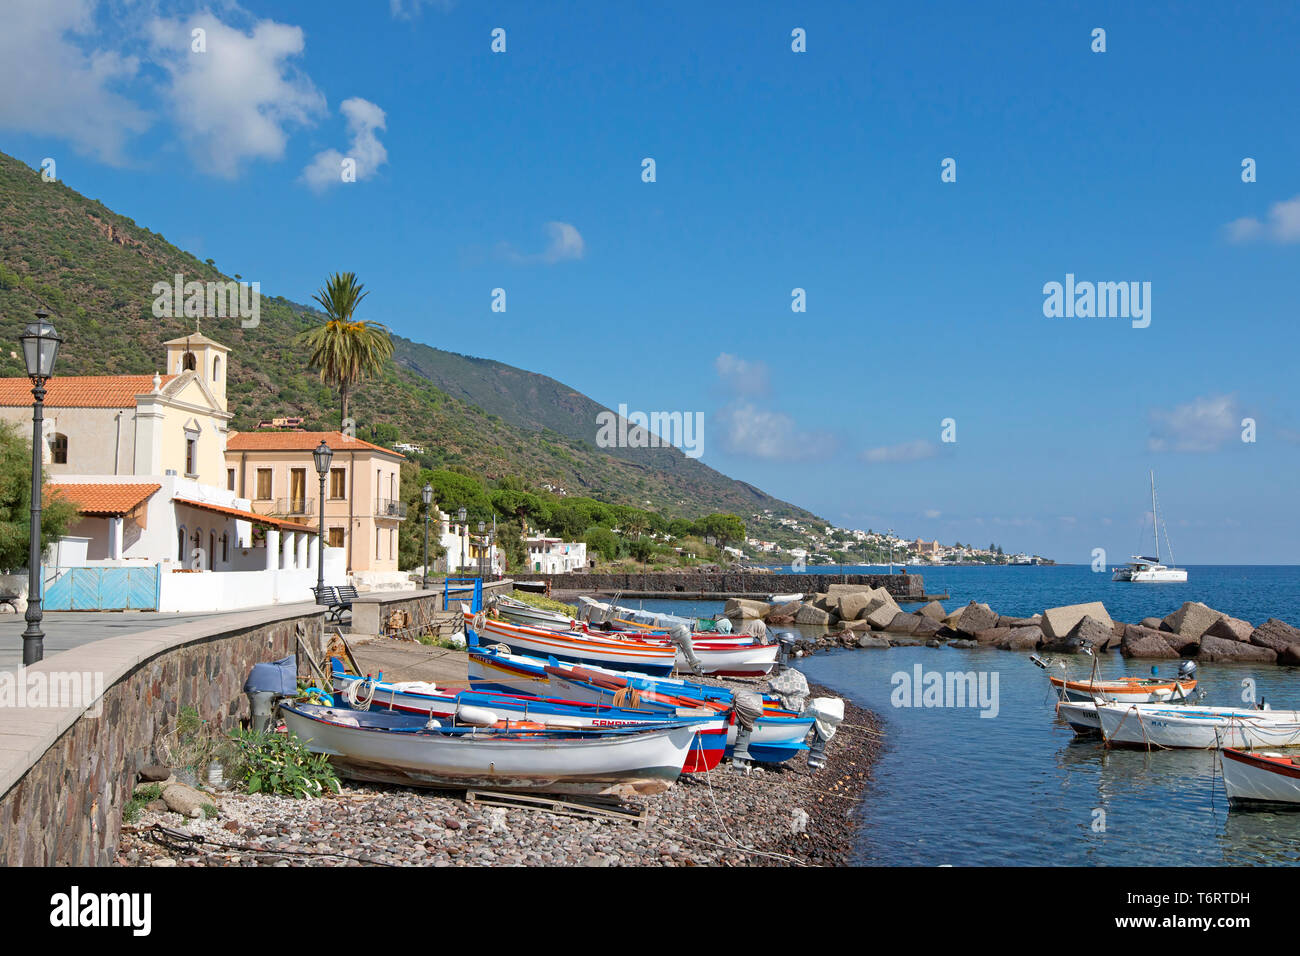 Barche di pescatori sulla spiaggia in Lingua, Salina, le Isole Eolie, sito UNESCO, off Sicilia, in provincia di Messina, Italia Foto Stock